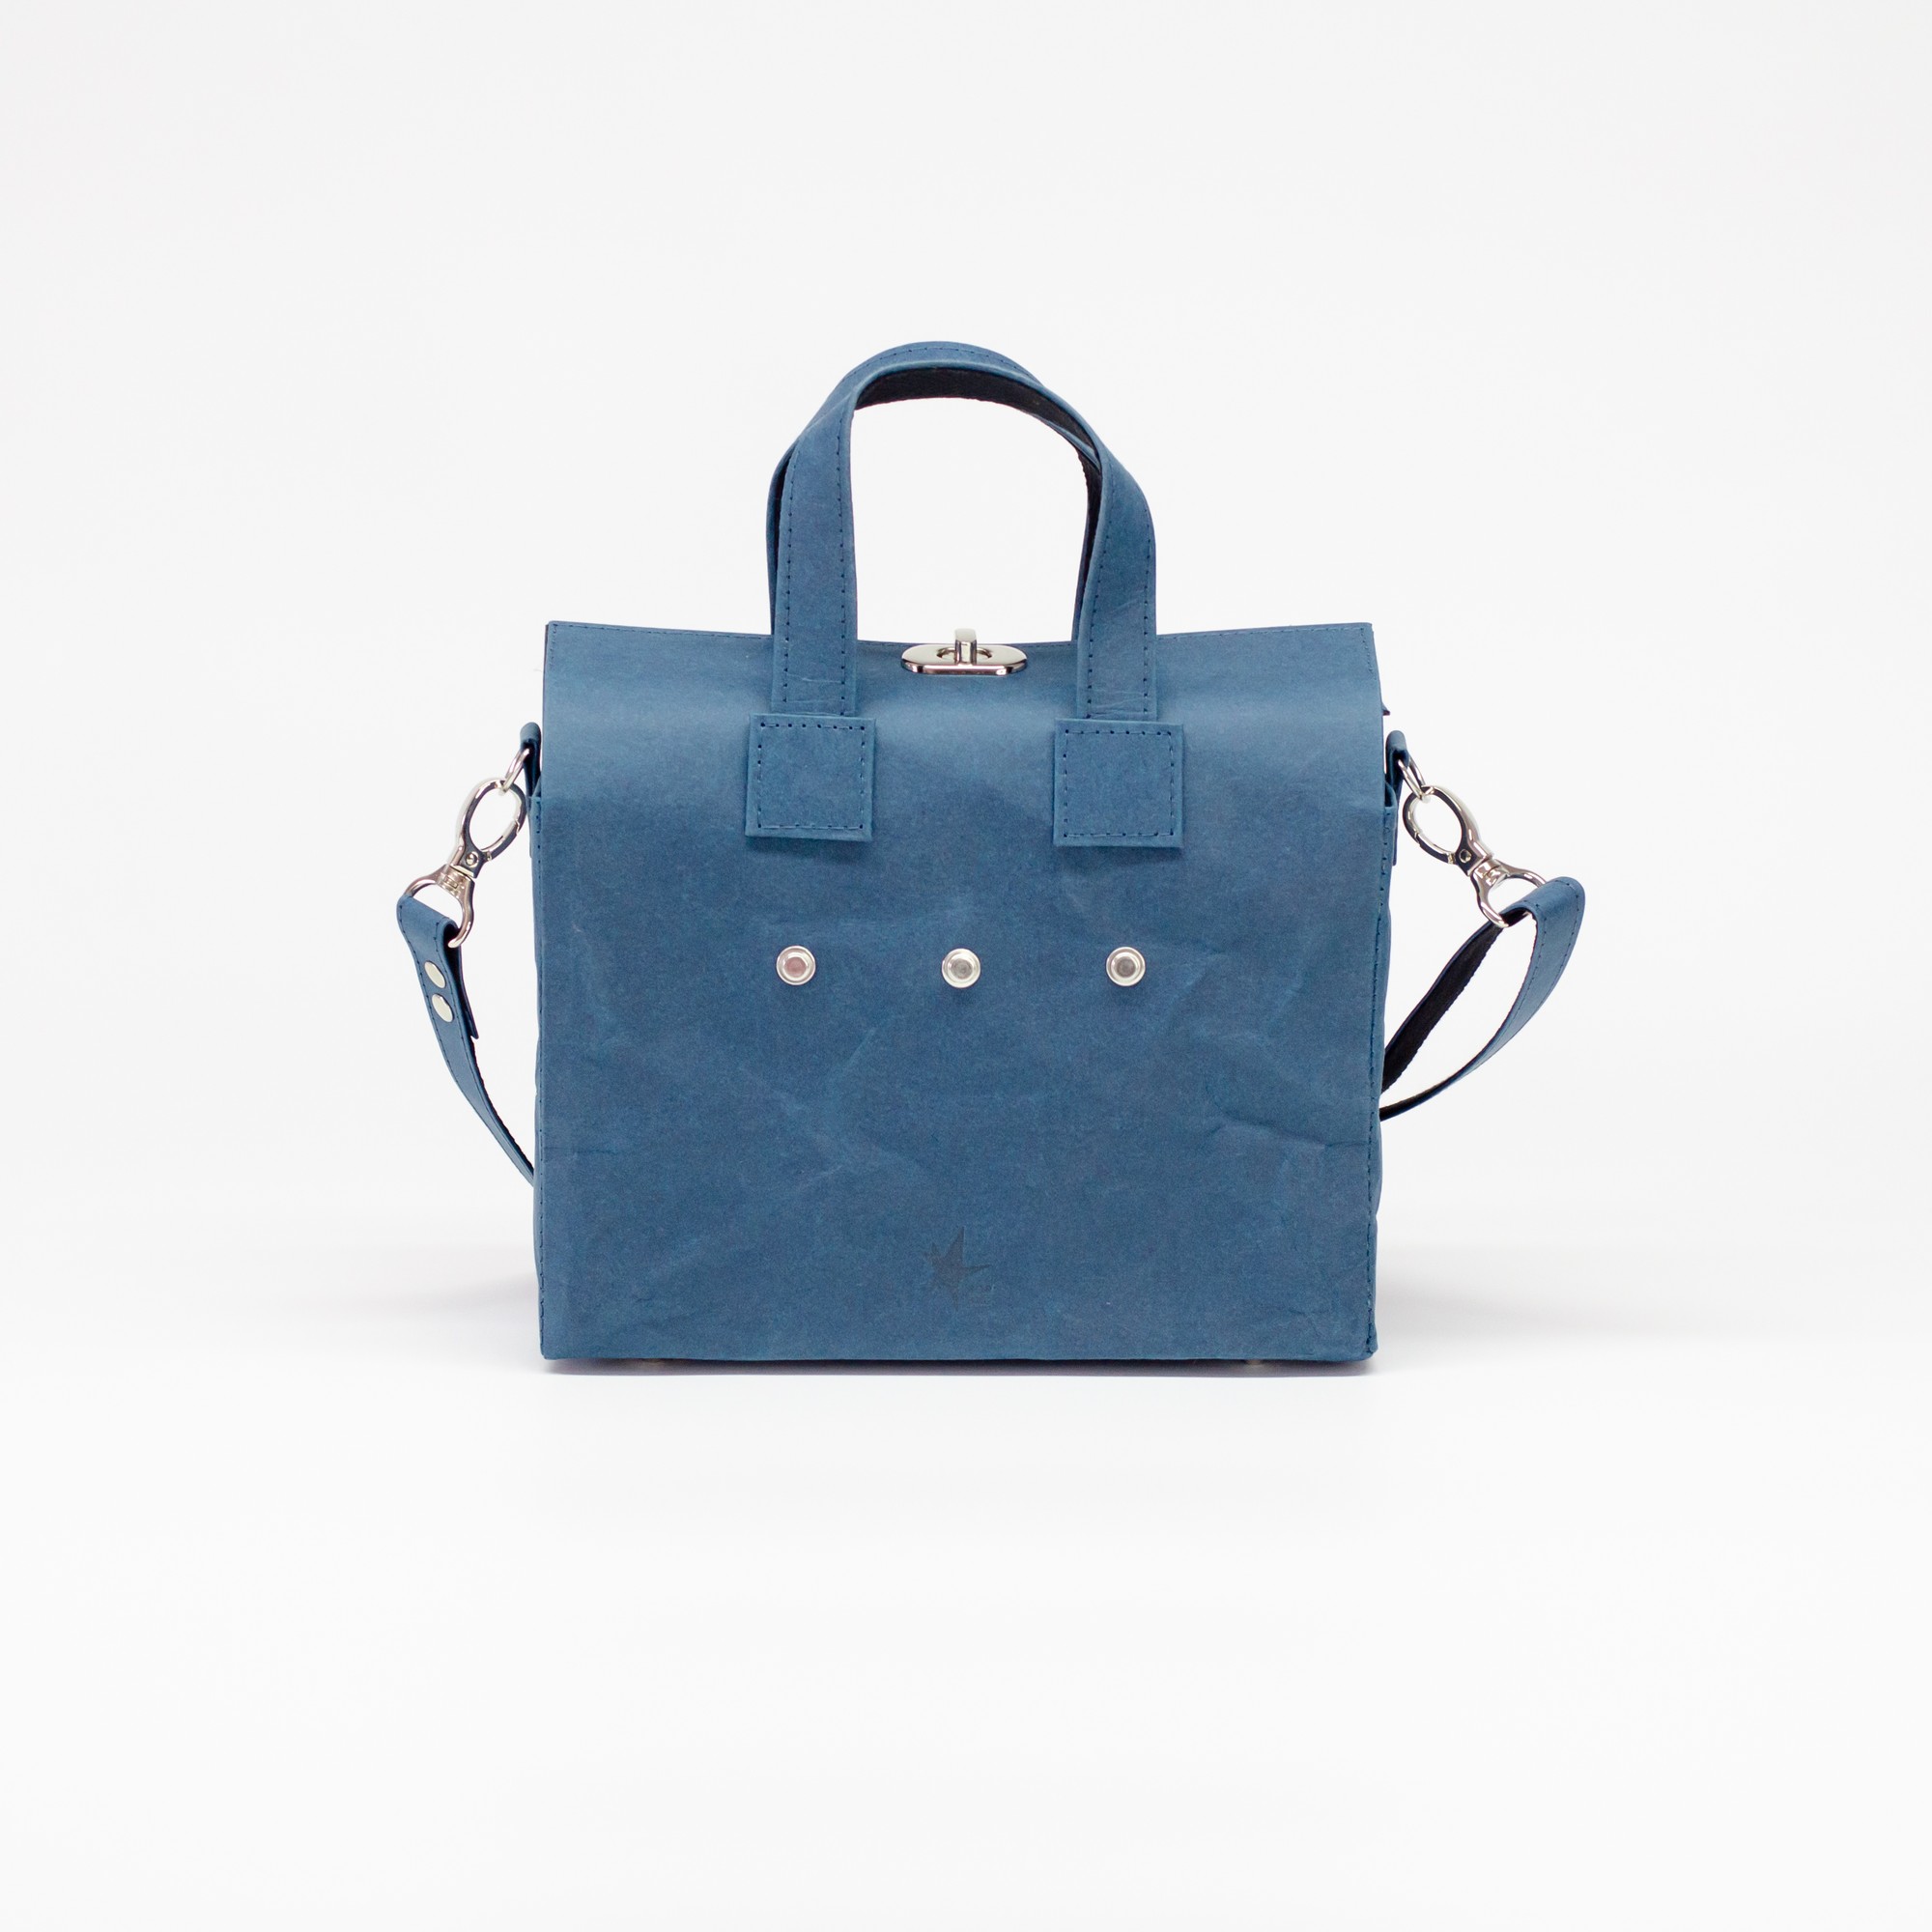 VIRGO Bag - Blueberry Color by Zori Bag